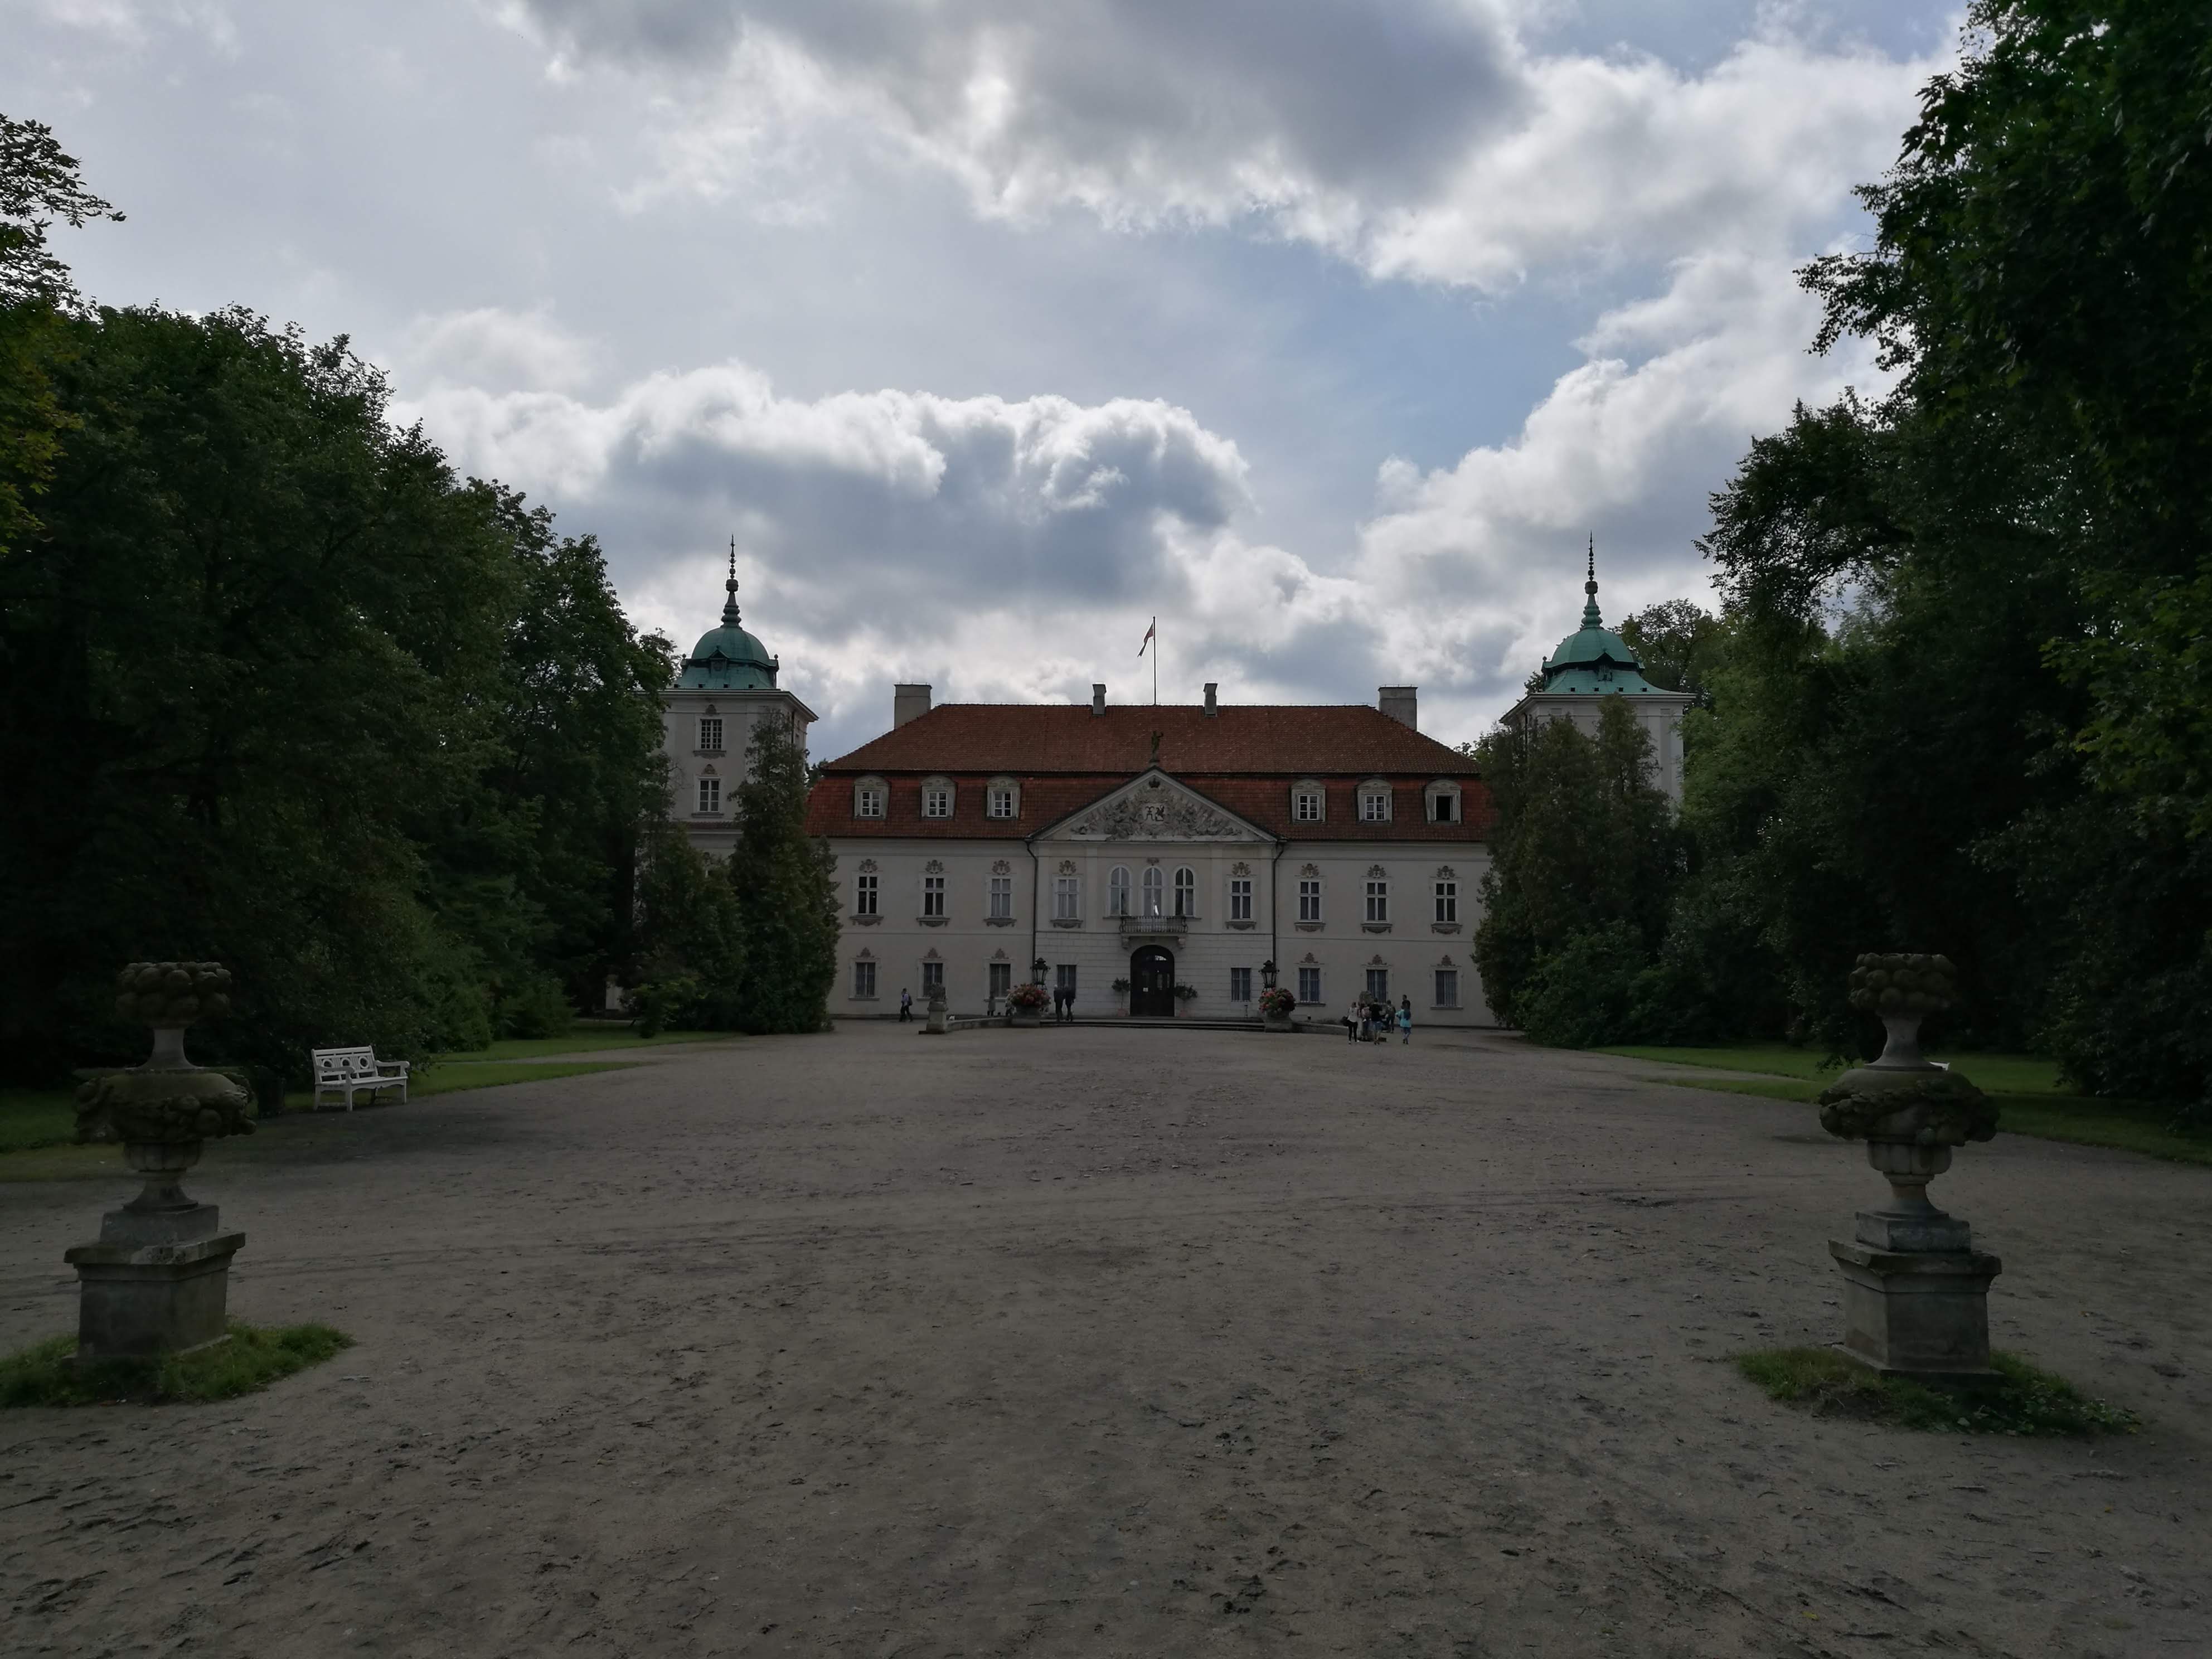 Nieborow palace